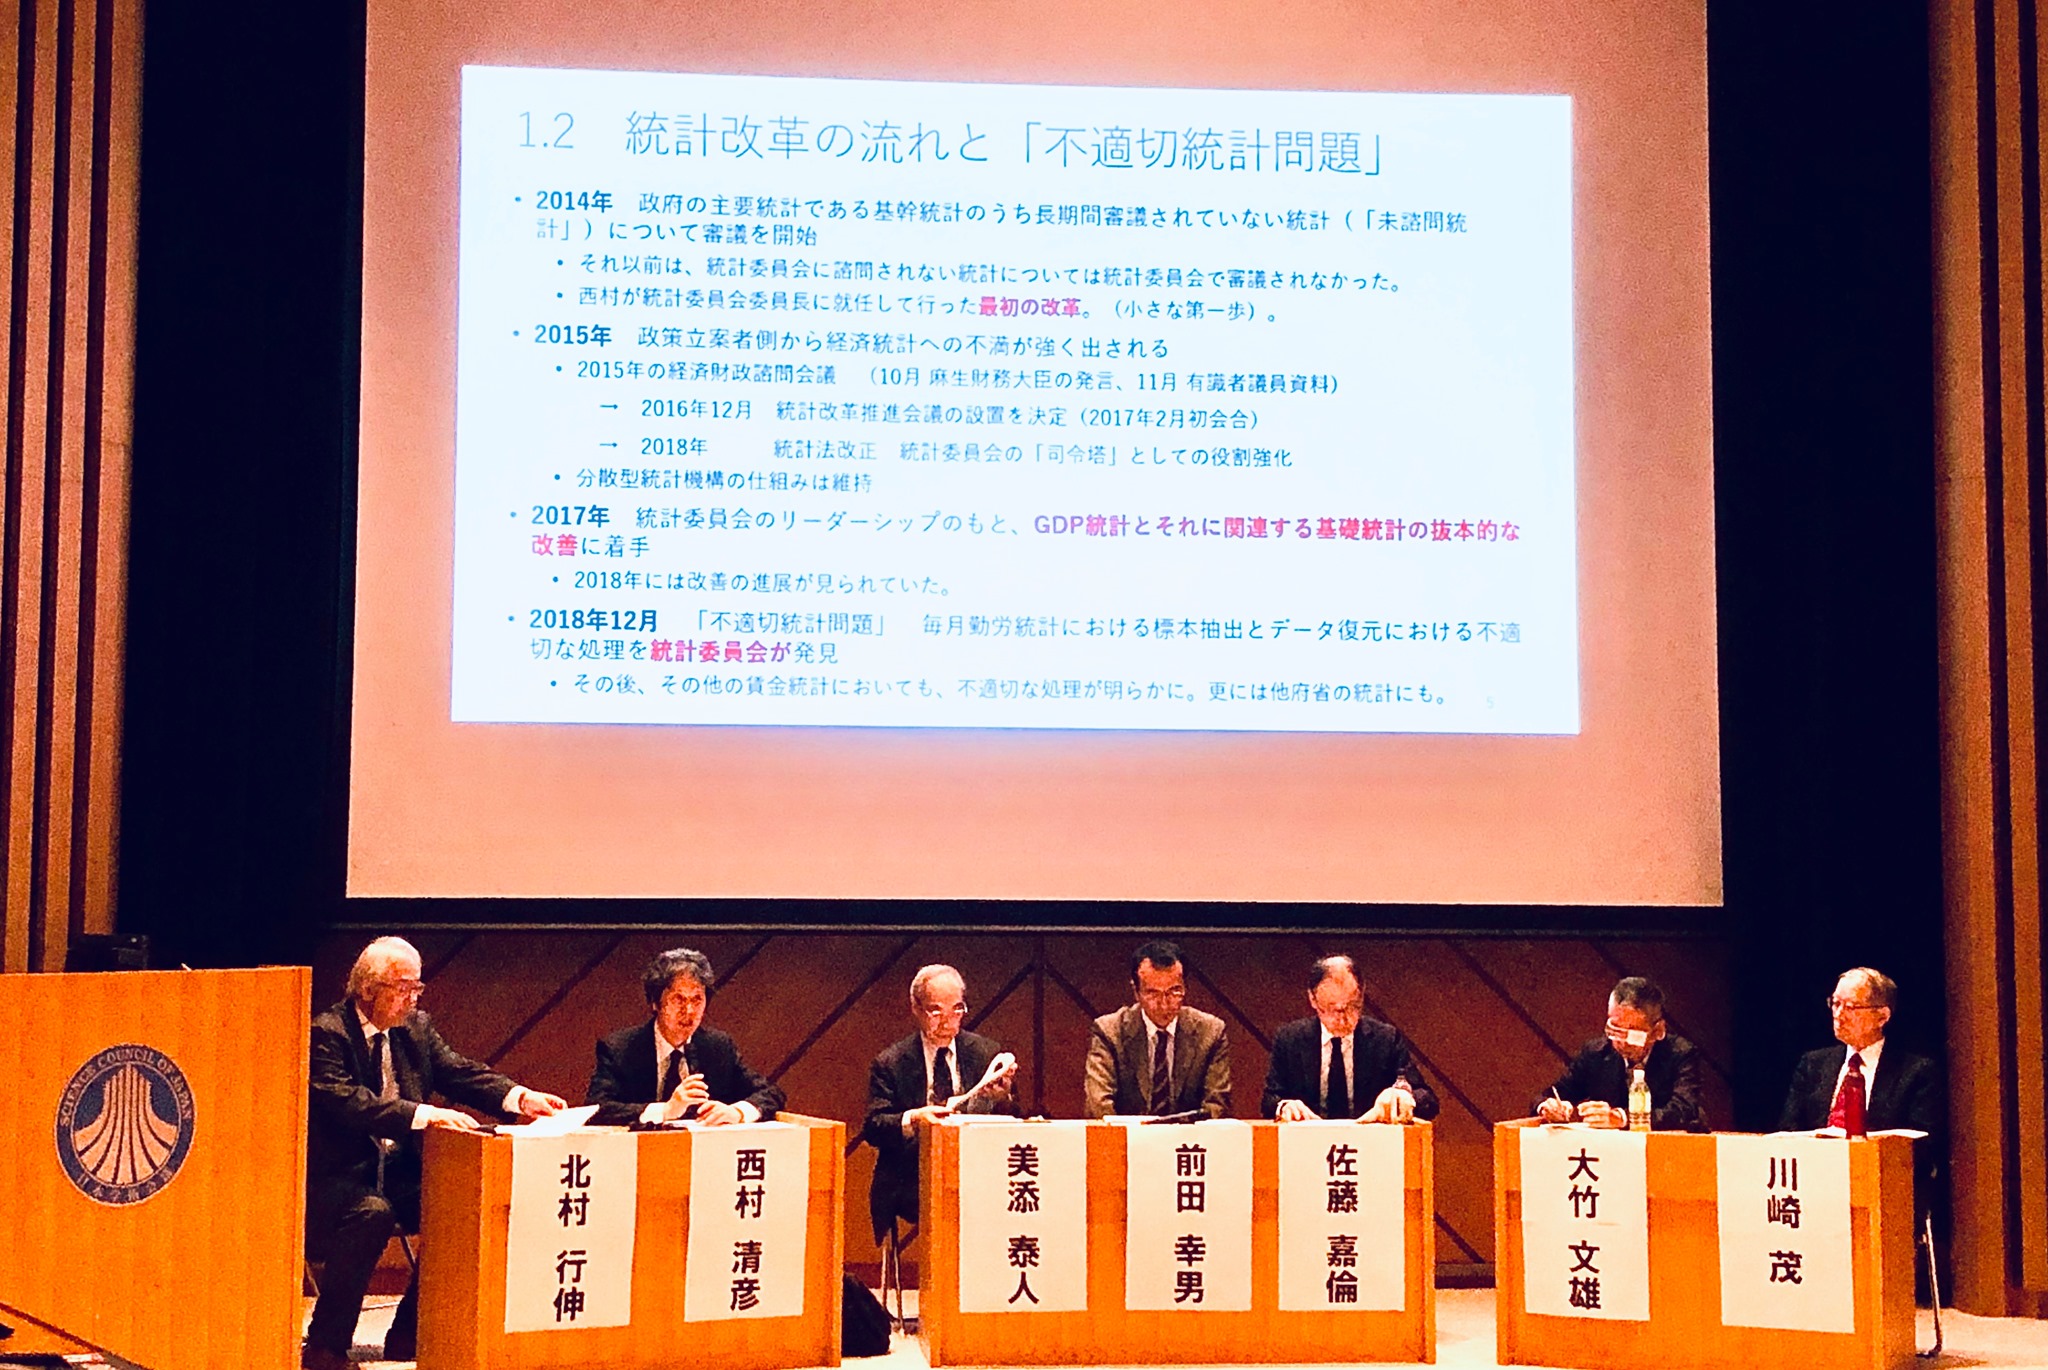 日本学術会議第一部主催公開シンポジウム 「公的統計問題を学術の視点から考える」を聴講しました。